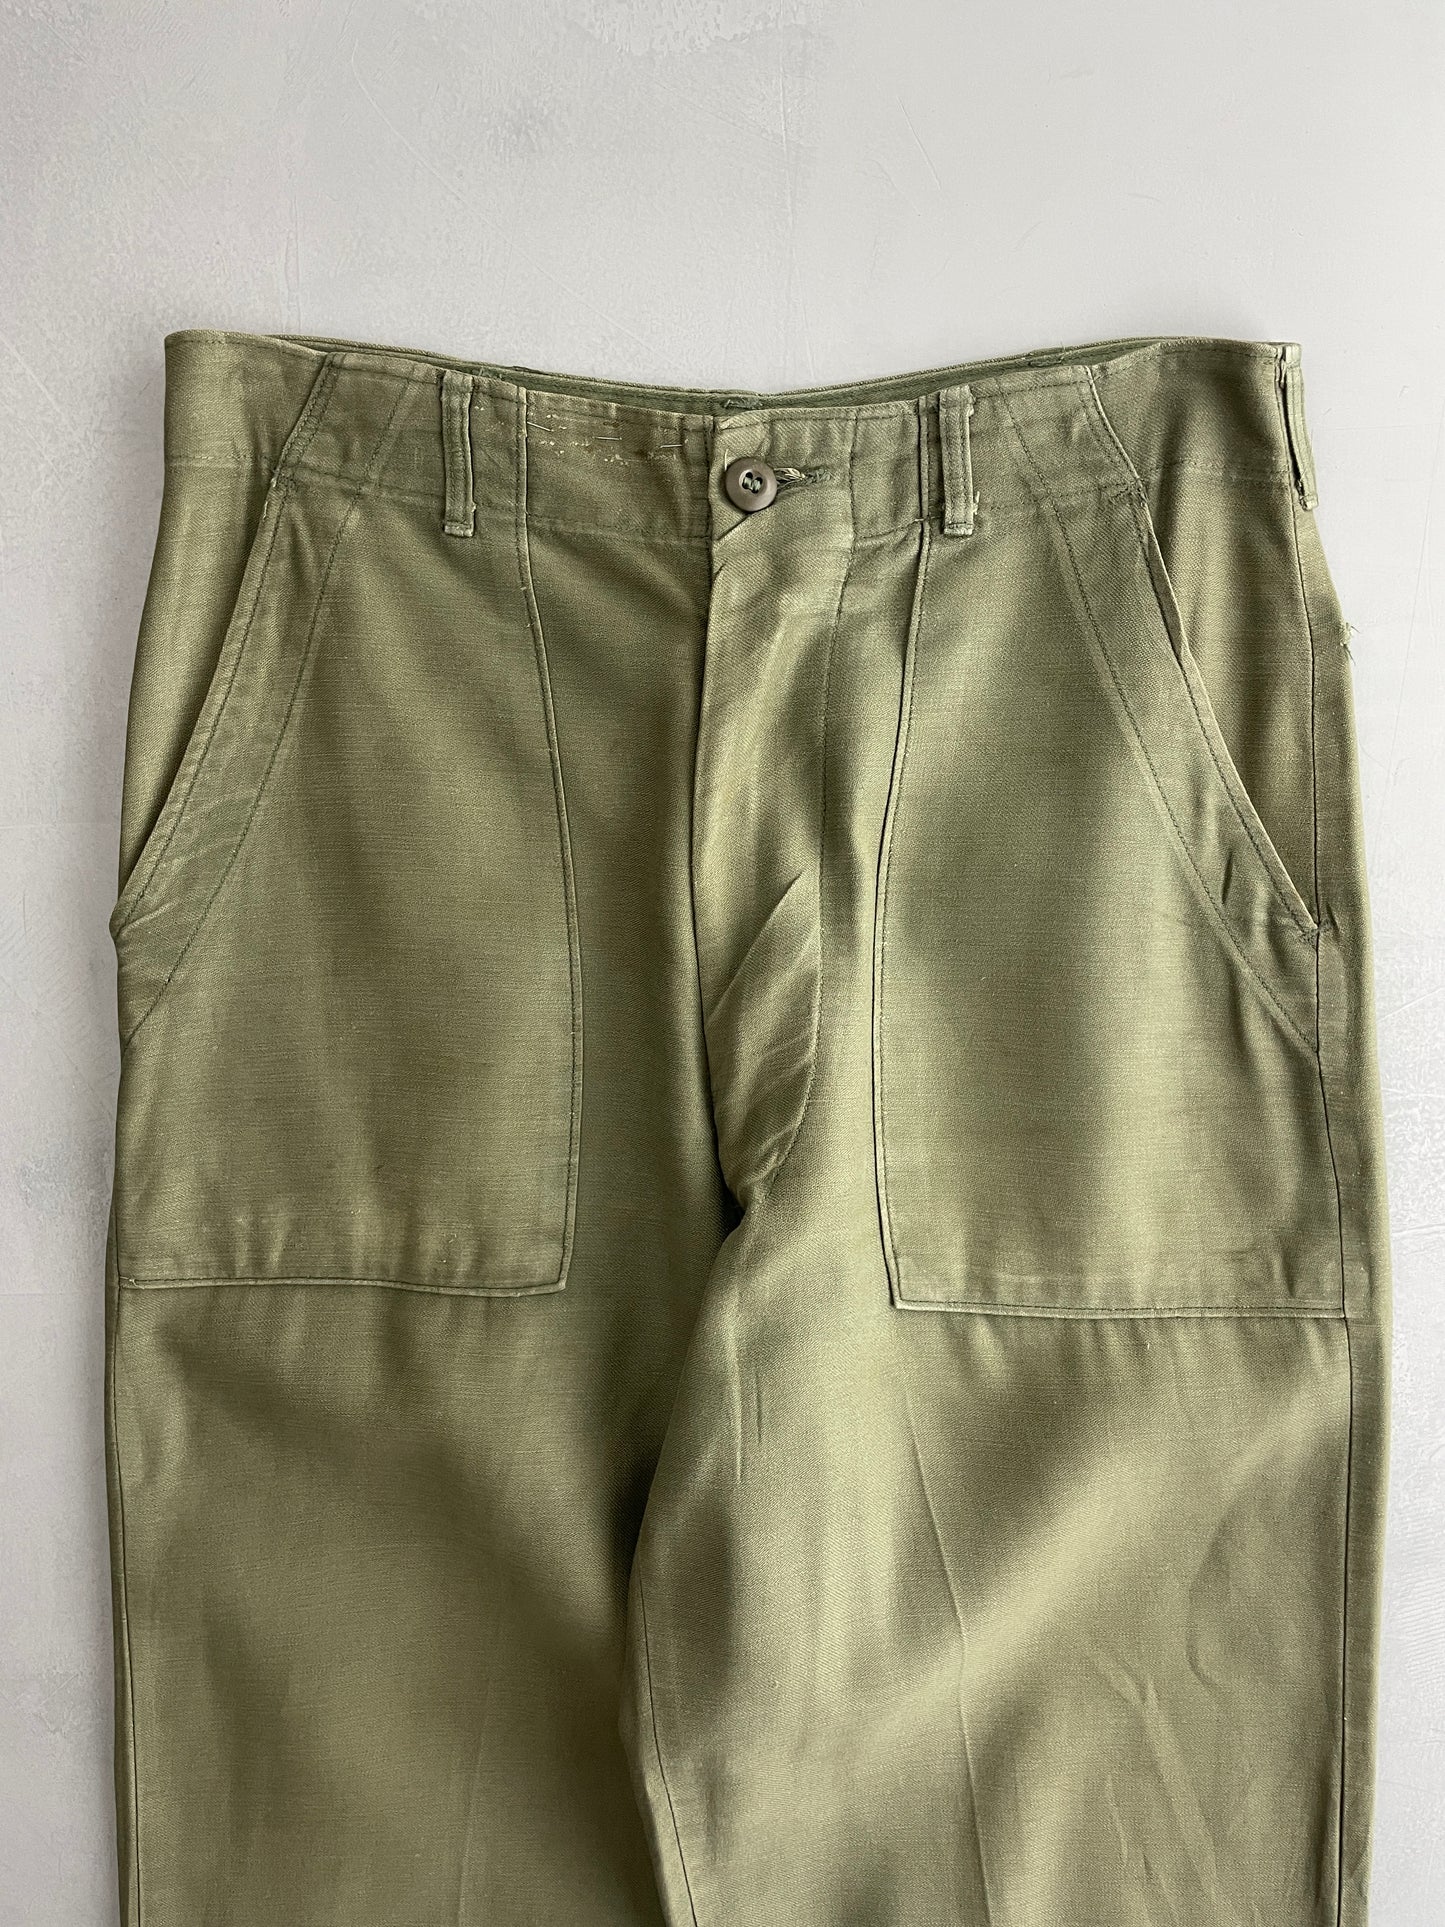 OG-107 US Army Pants [32"]